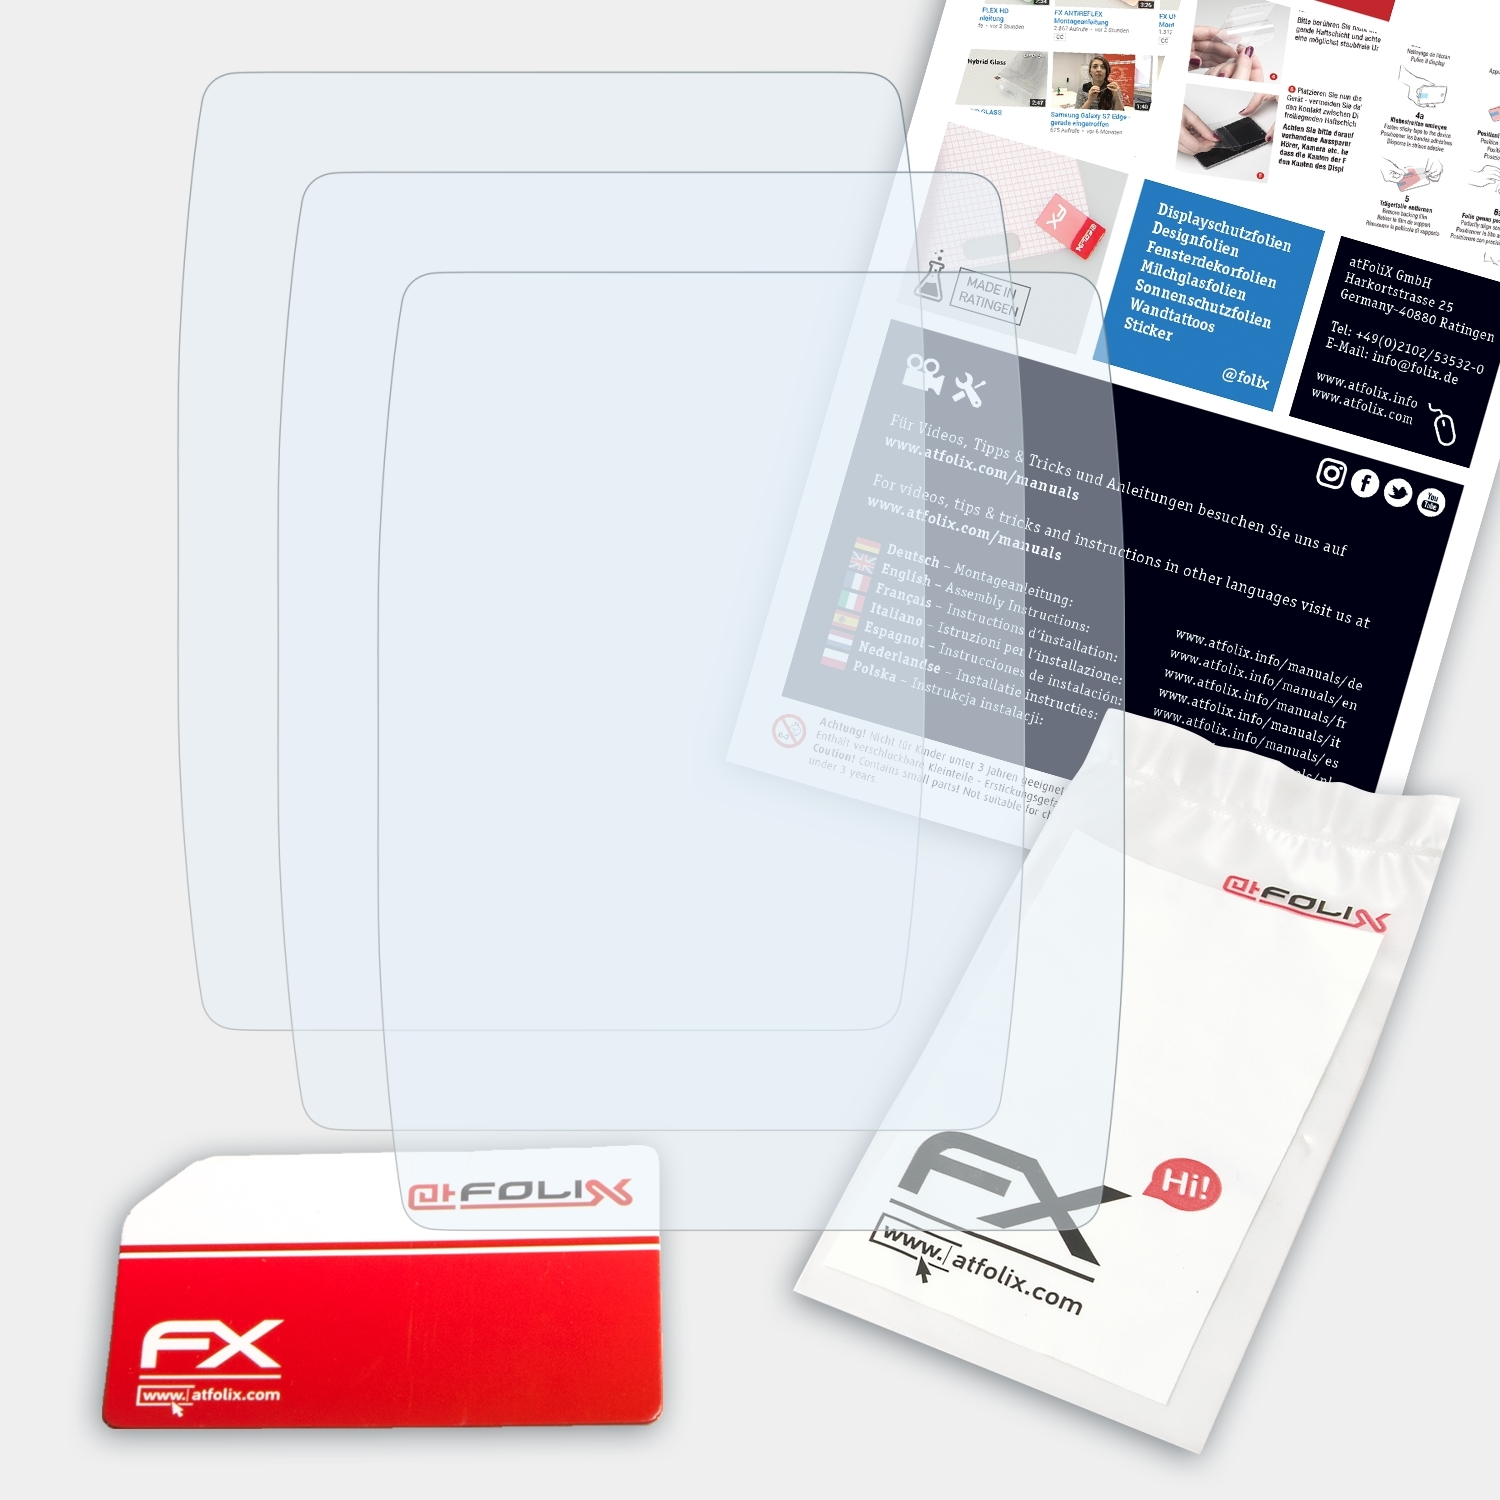 ATFOLIX 3x FX-Clear Displayschutz(für 201dv/551c/551dv) echo Garmin